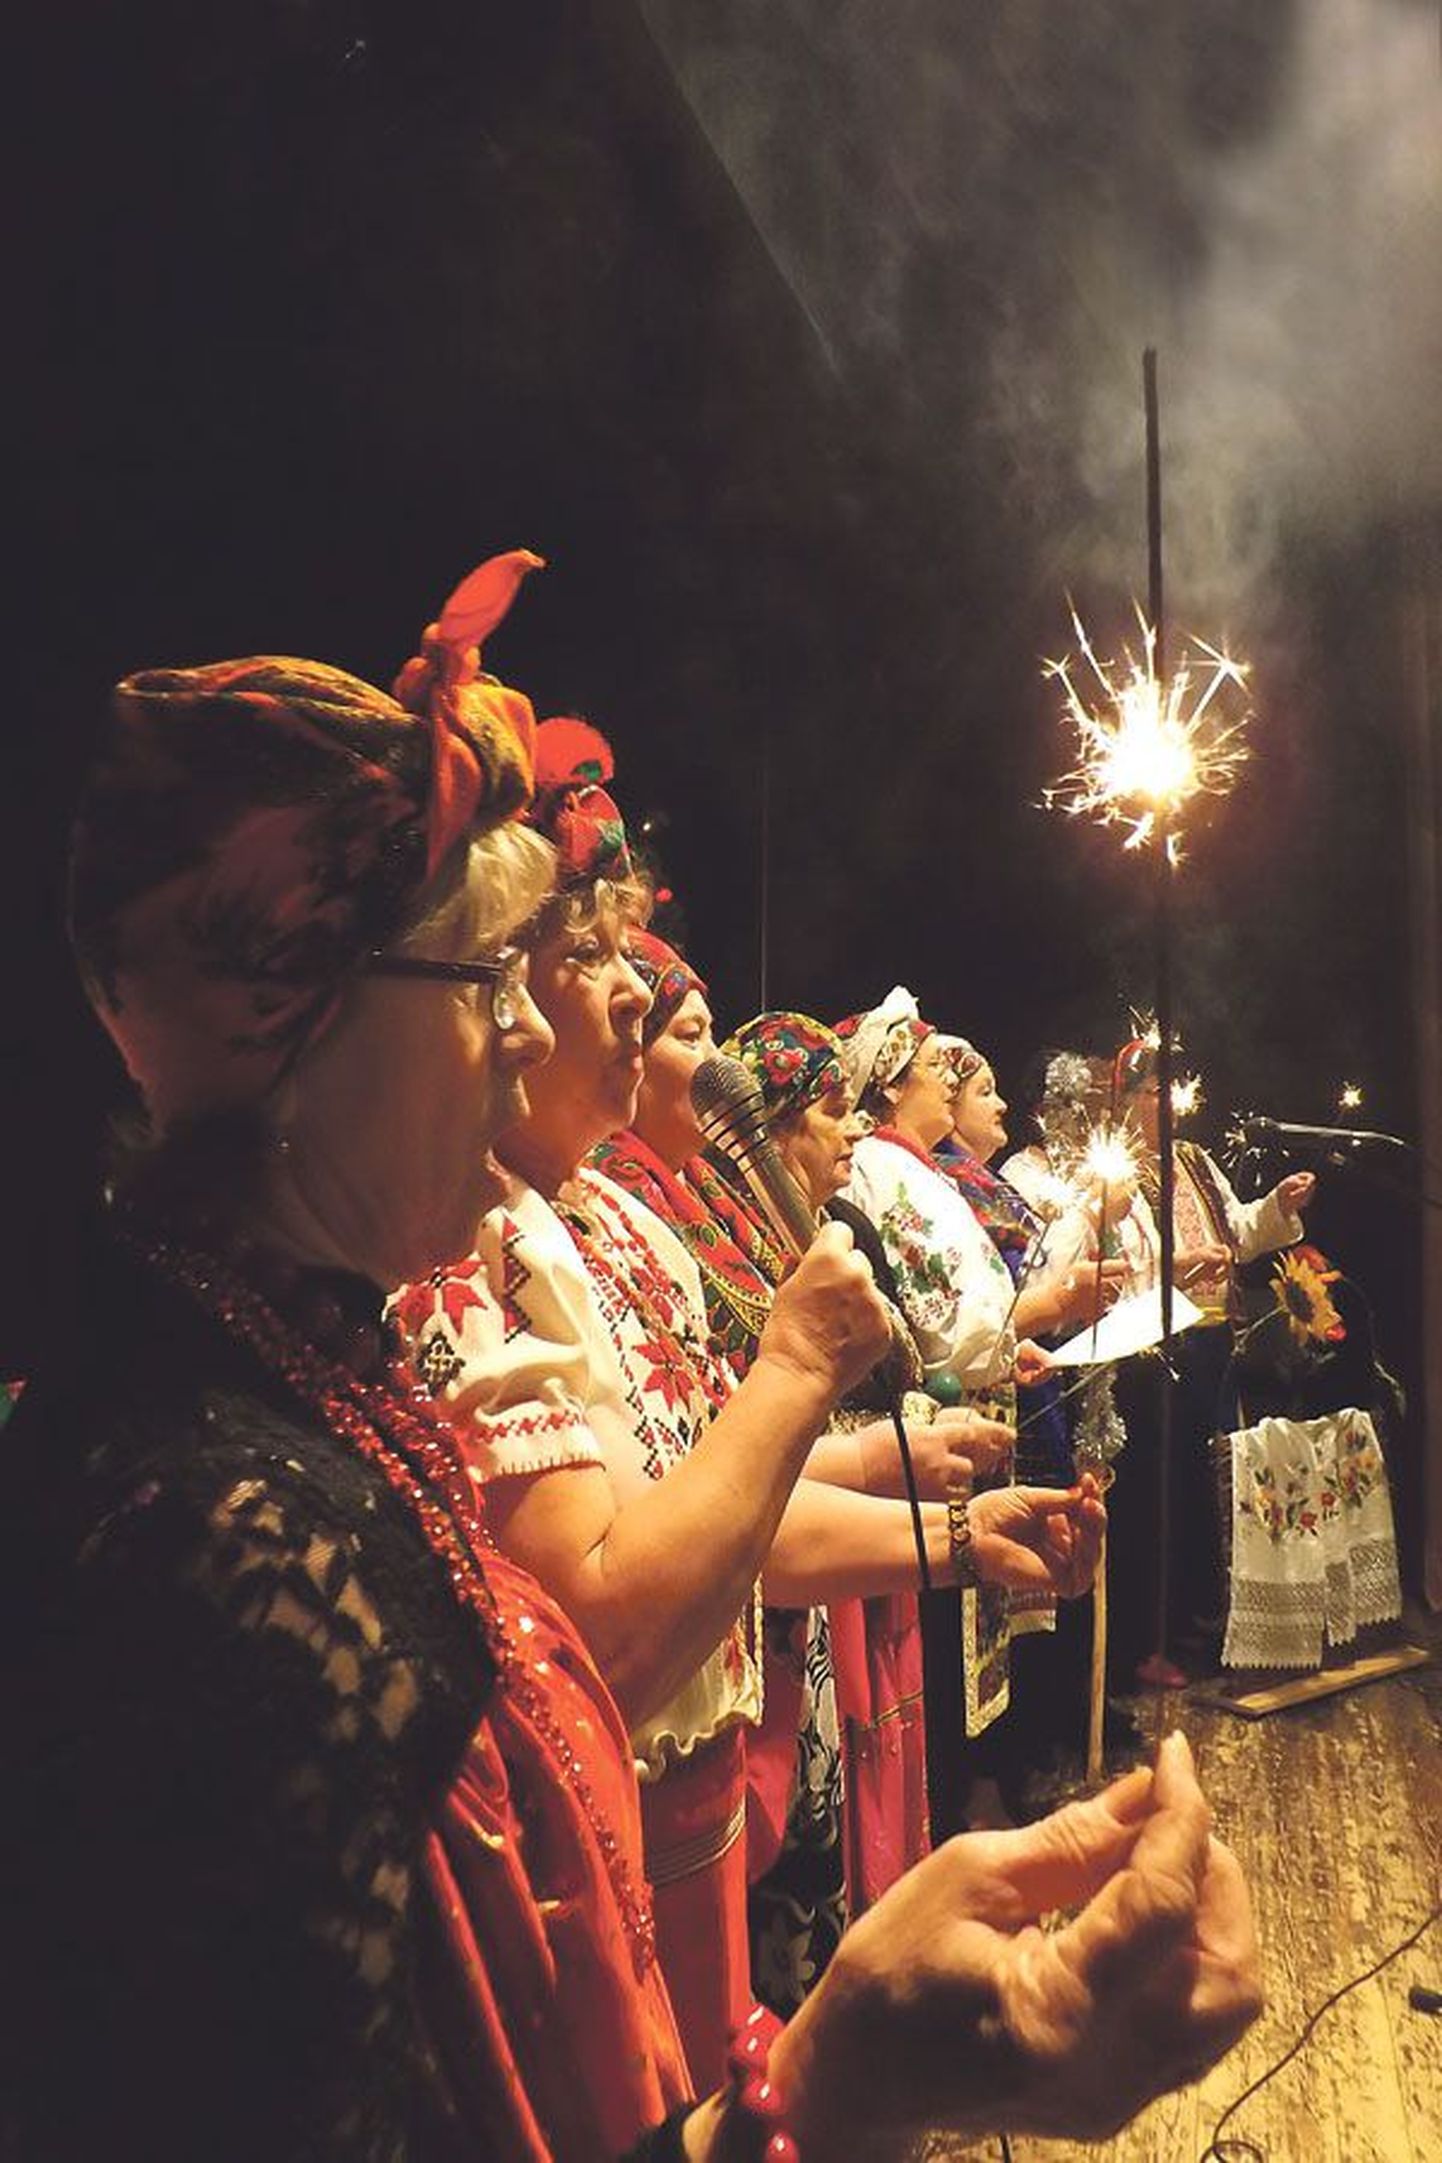 Заключительная песня праздника 
в исполнении украинского ансамбля «Барвинок» и в сопро-вождении бенгальских огней.